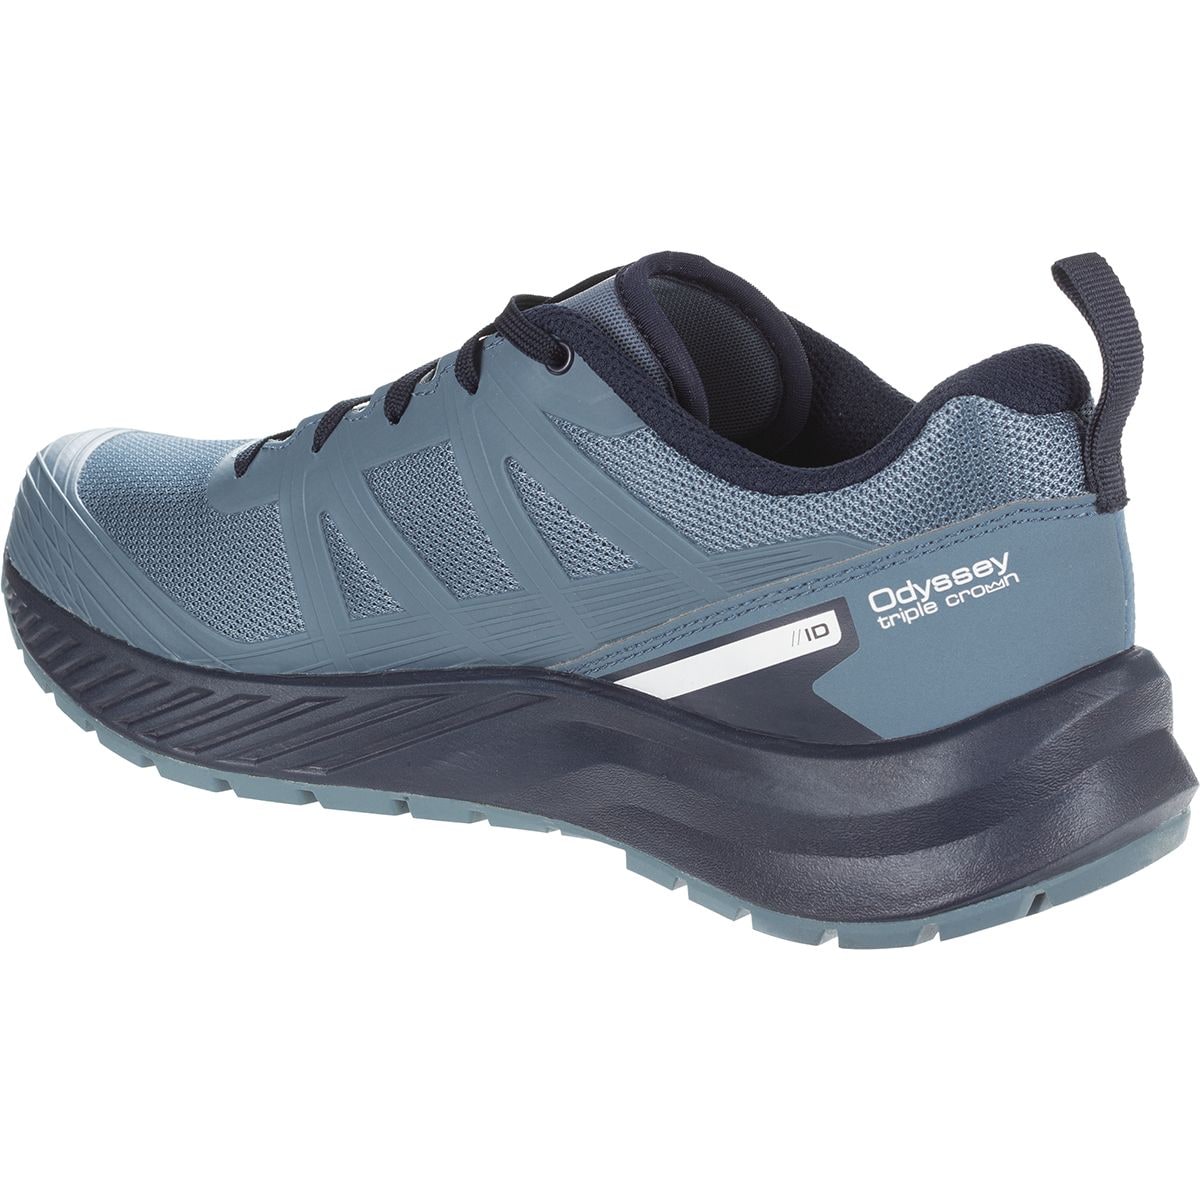 Salomon Odyssey Triple Crown Hiking Shoe - Women's - Footwear